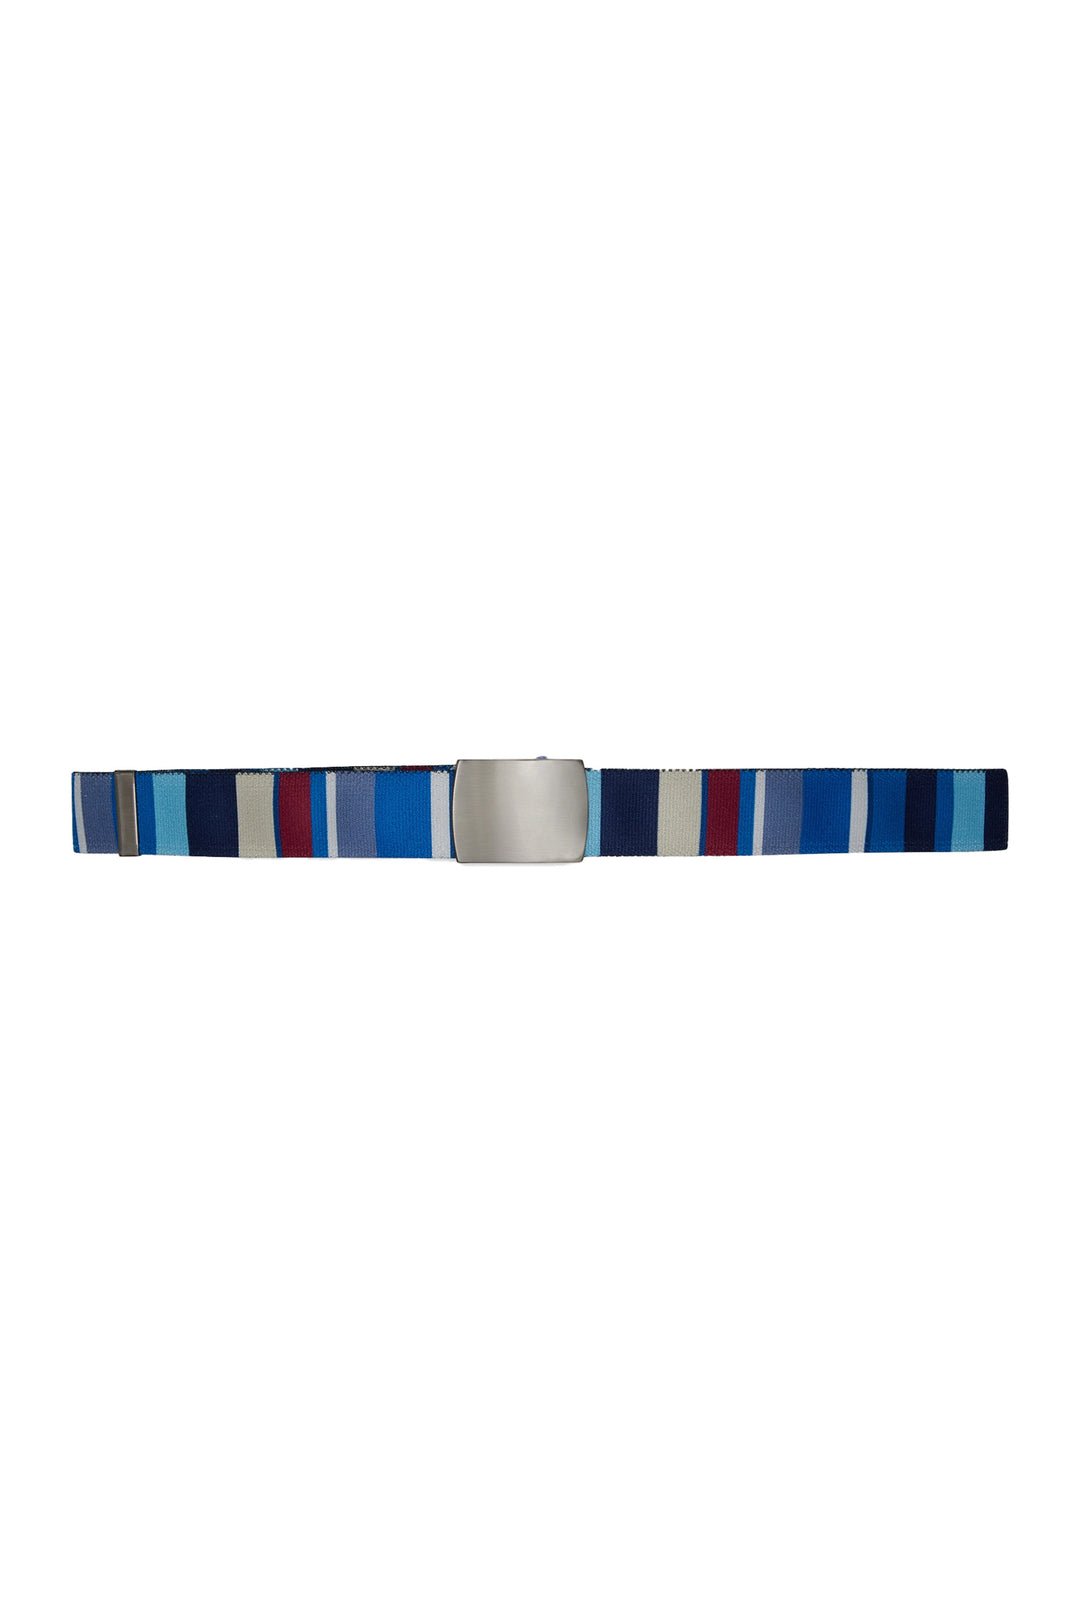 GALLO Cintura nastro elastica unisex blu royal righe multicolor - Mancinelli 1954